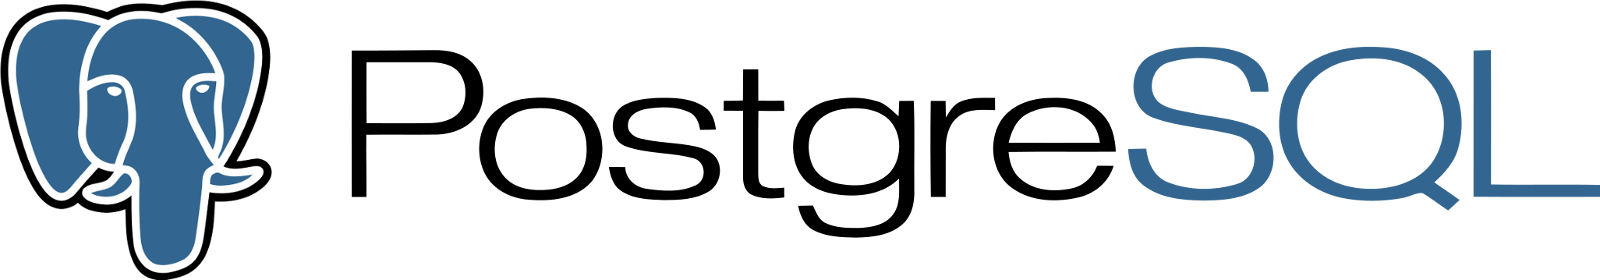 PostgreSQL Logo - Database of Databases - PostgreSQL